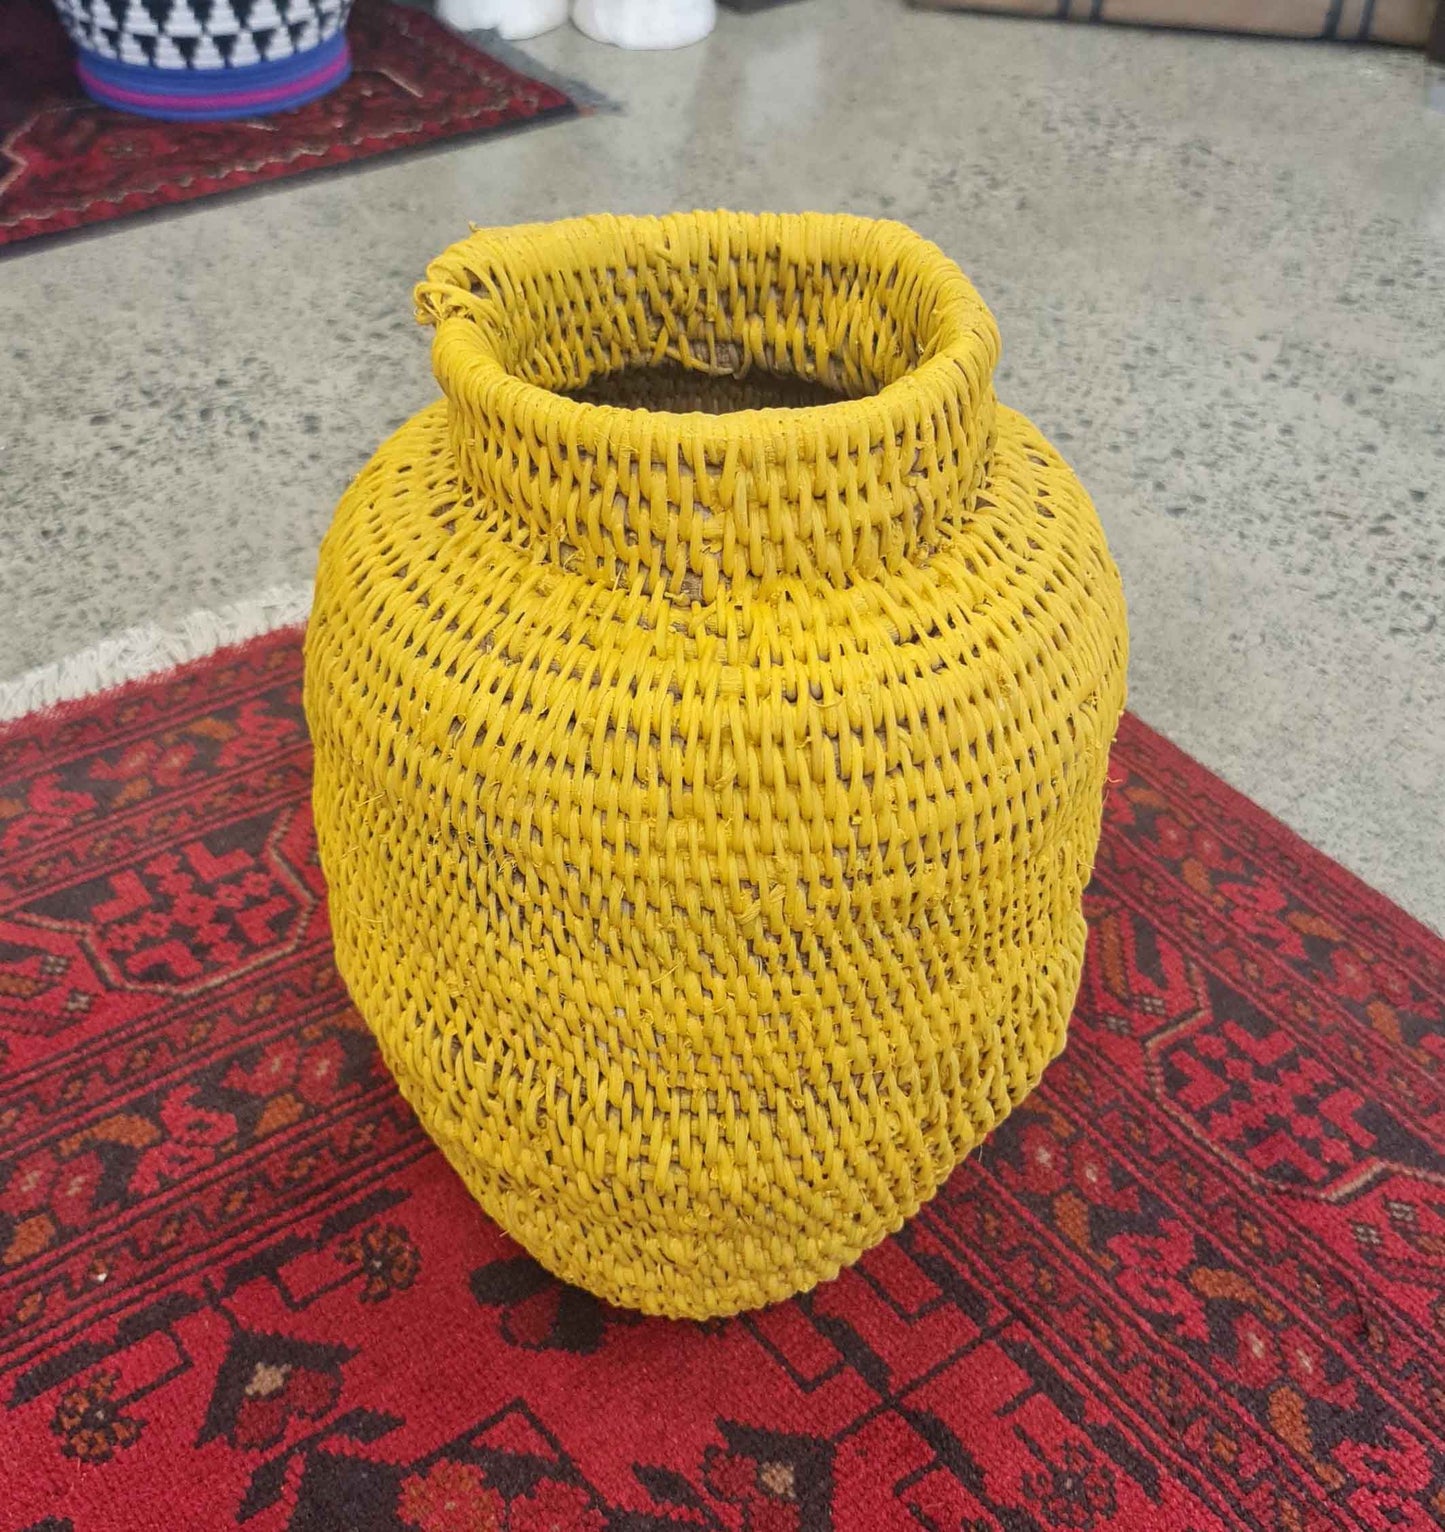 Buhera Baskets - Small